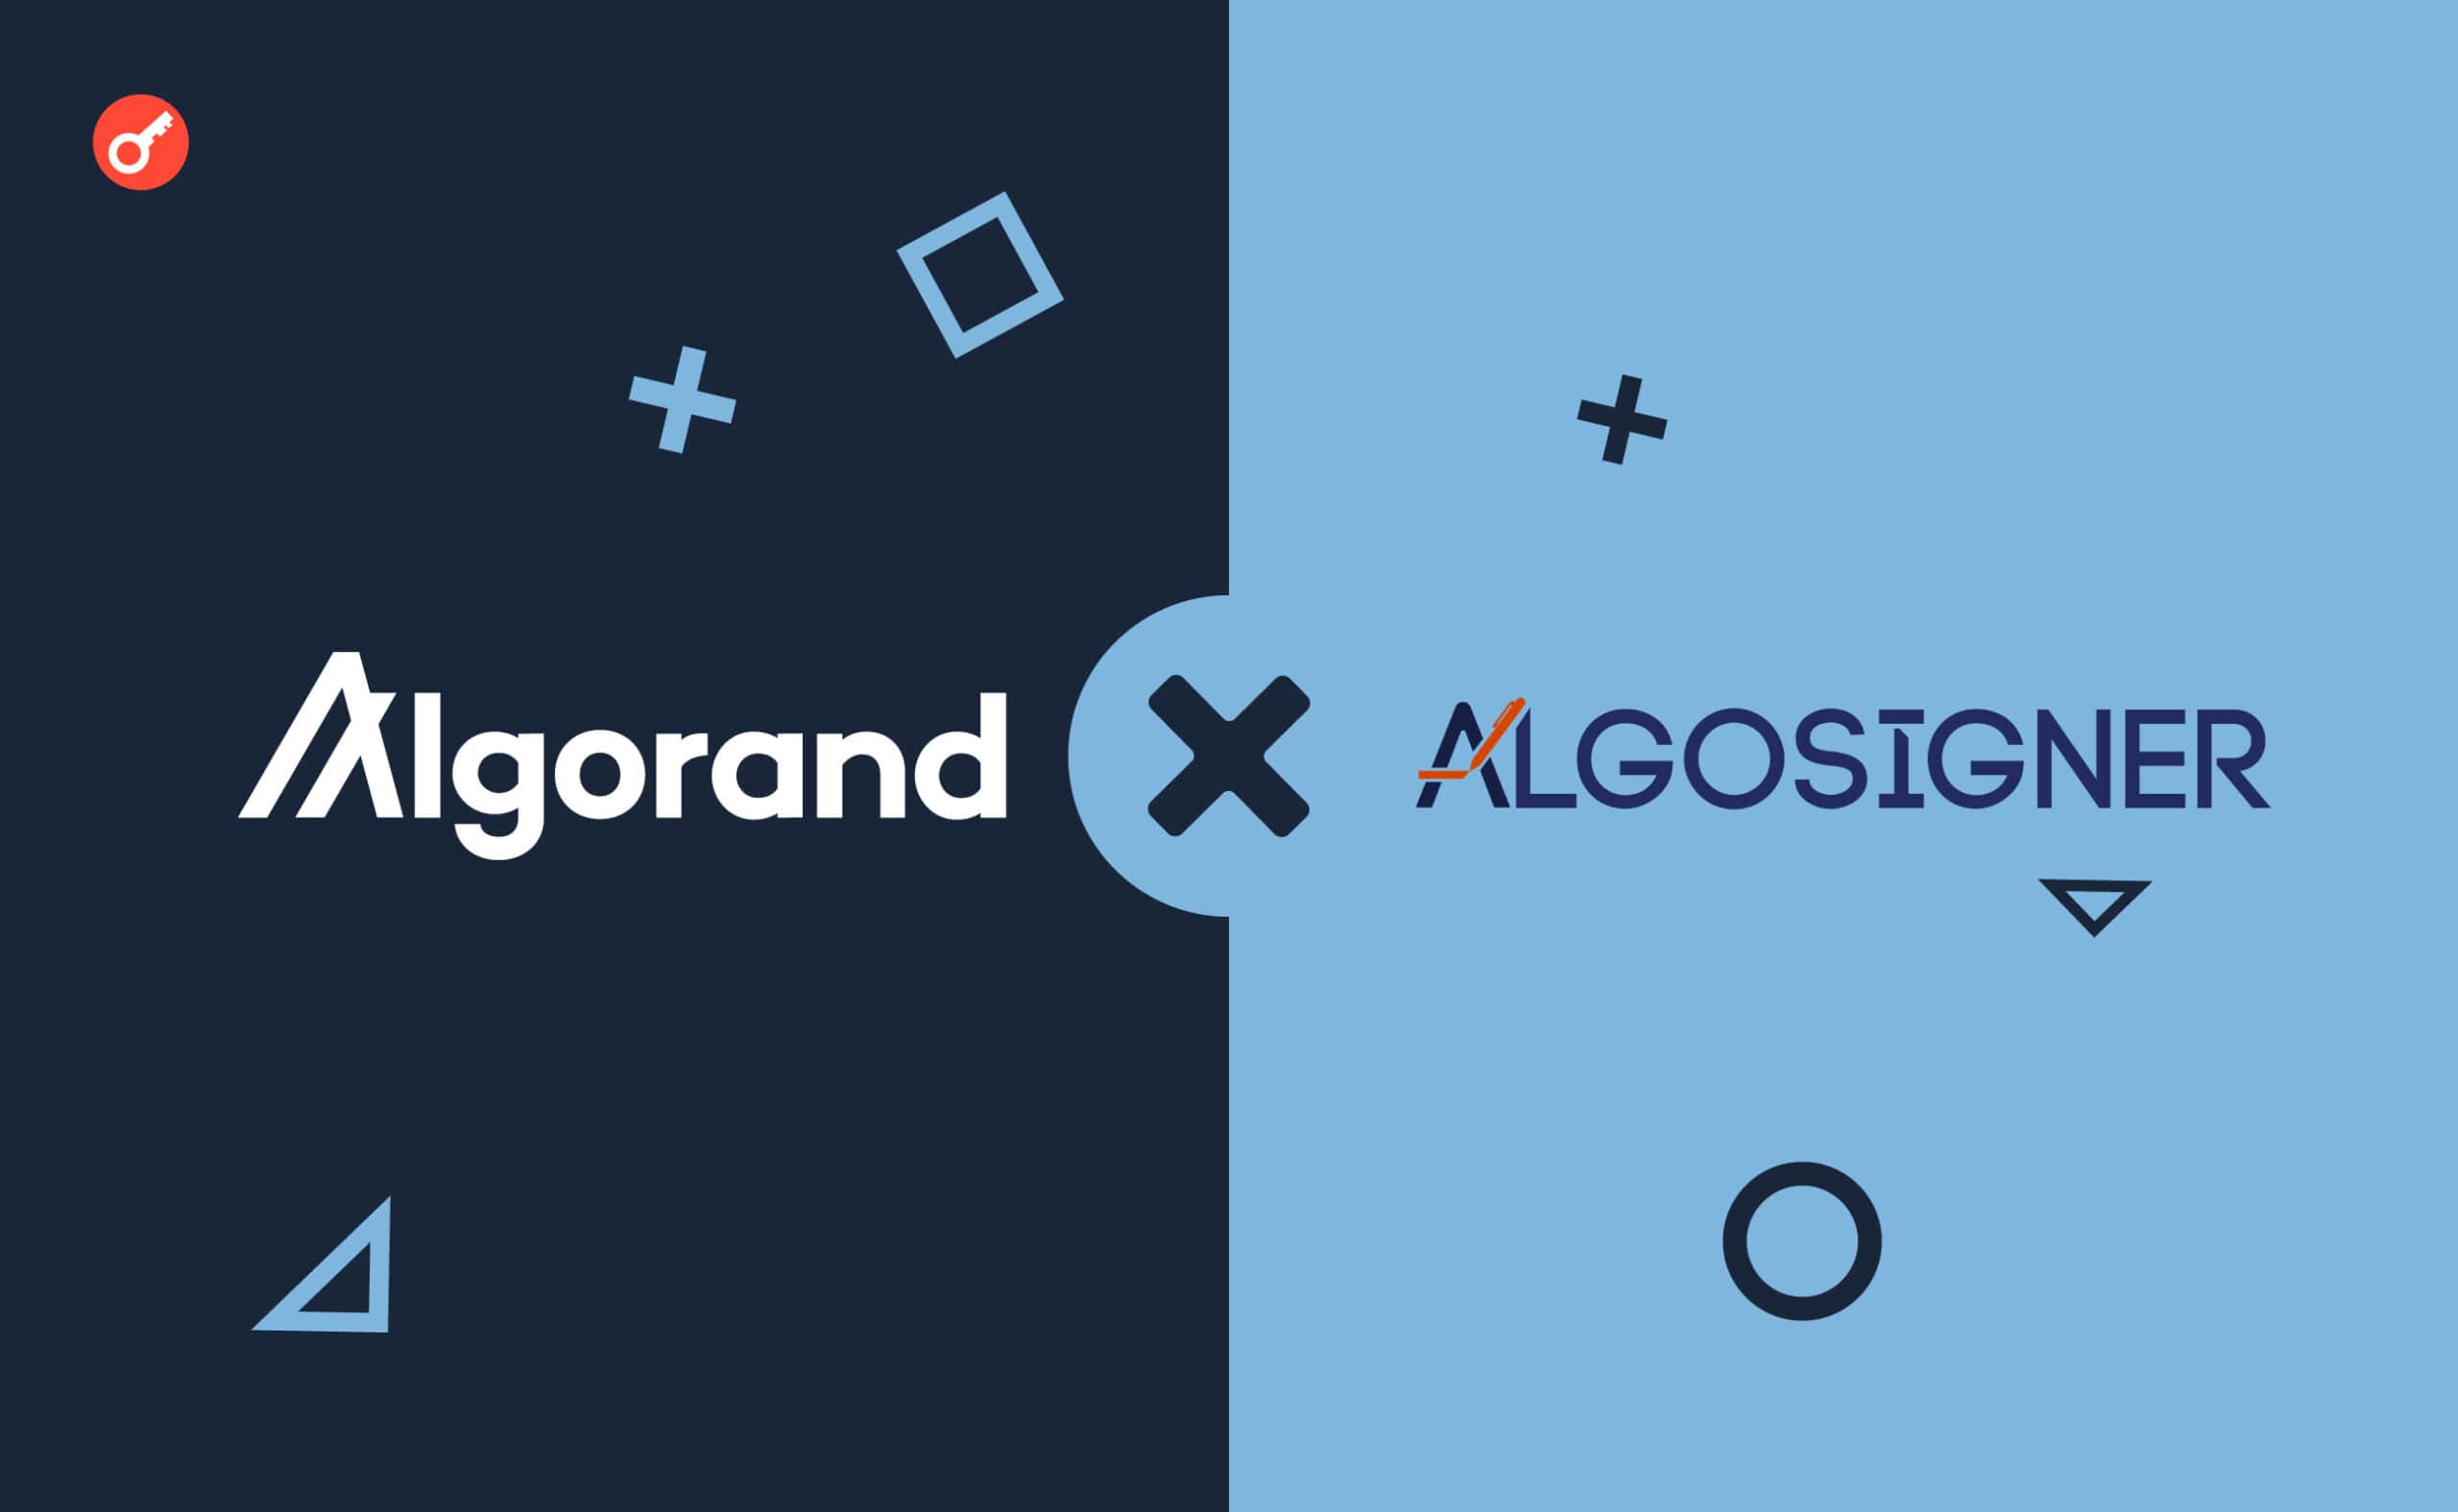 Месяц назад Algorand Foundation анонсировала, что прекратит поддержку кошелька AlgoSigner. Вот этот день настал